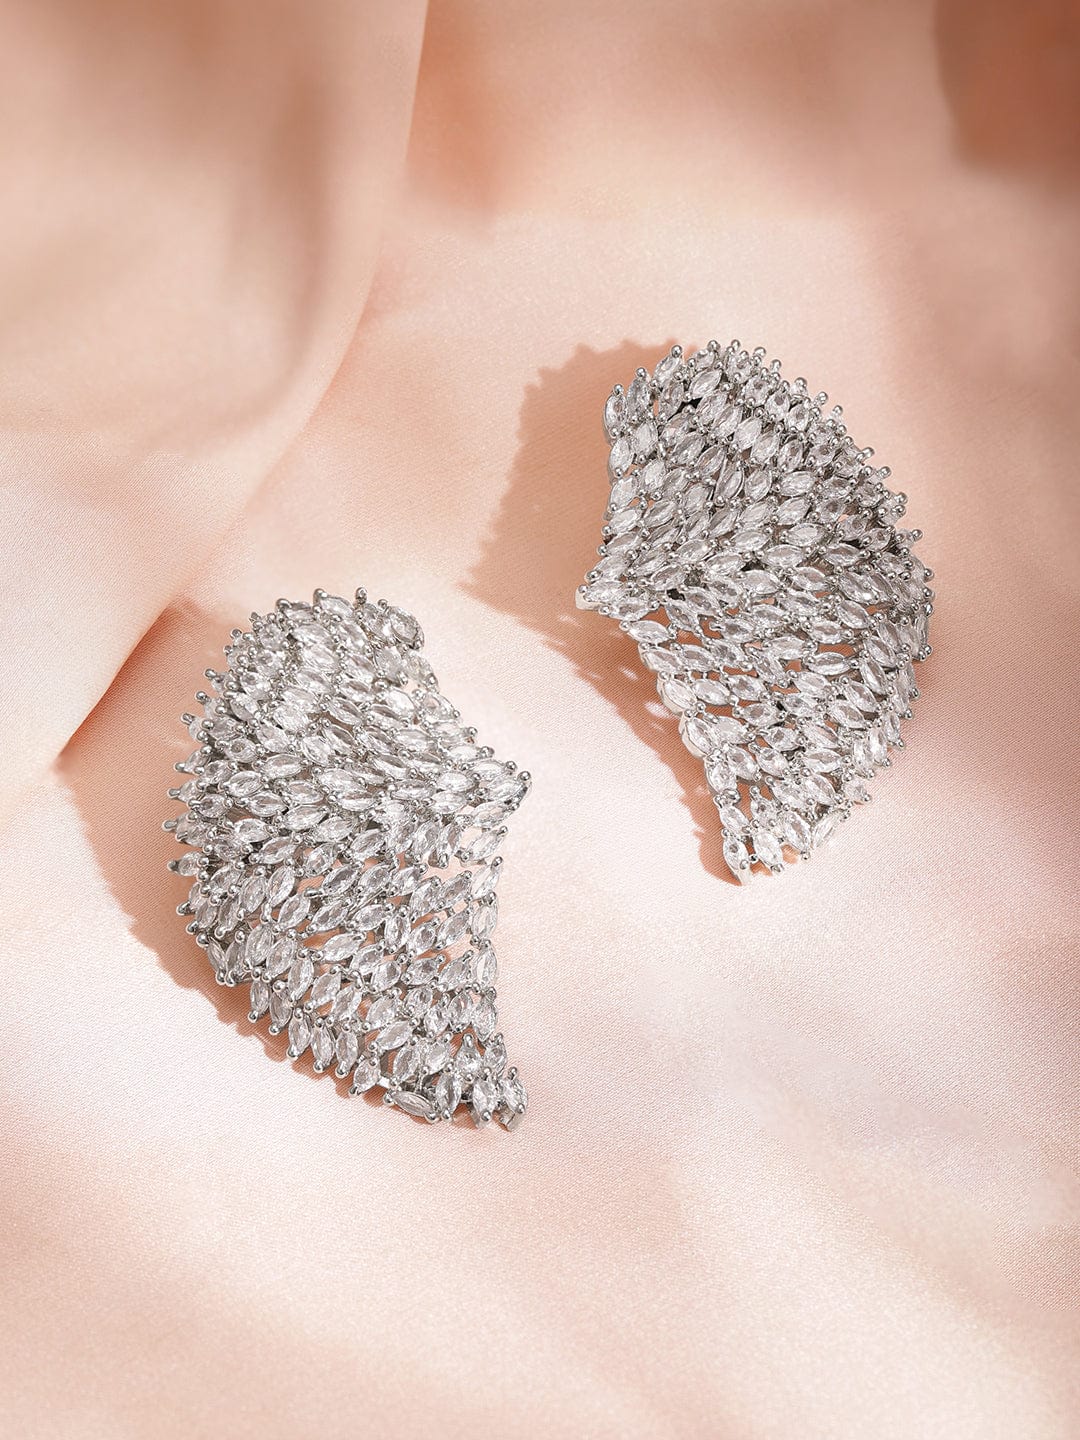 Rubans Rhodium Plated Pave American Diamond Studded Twilight Sparklers Earrings Studs